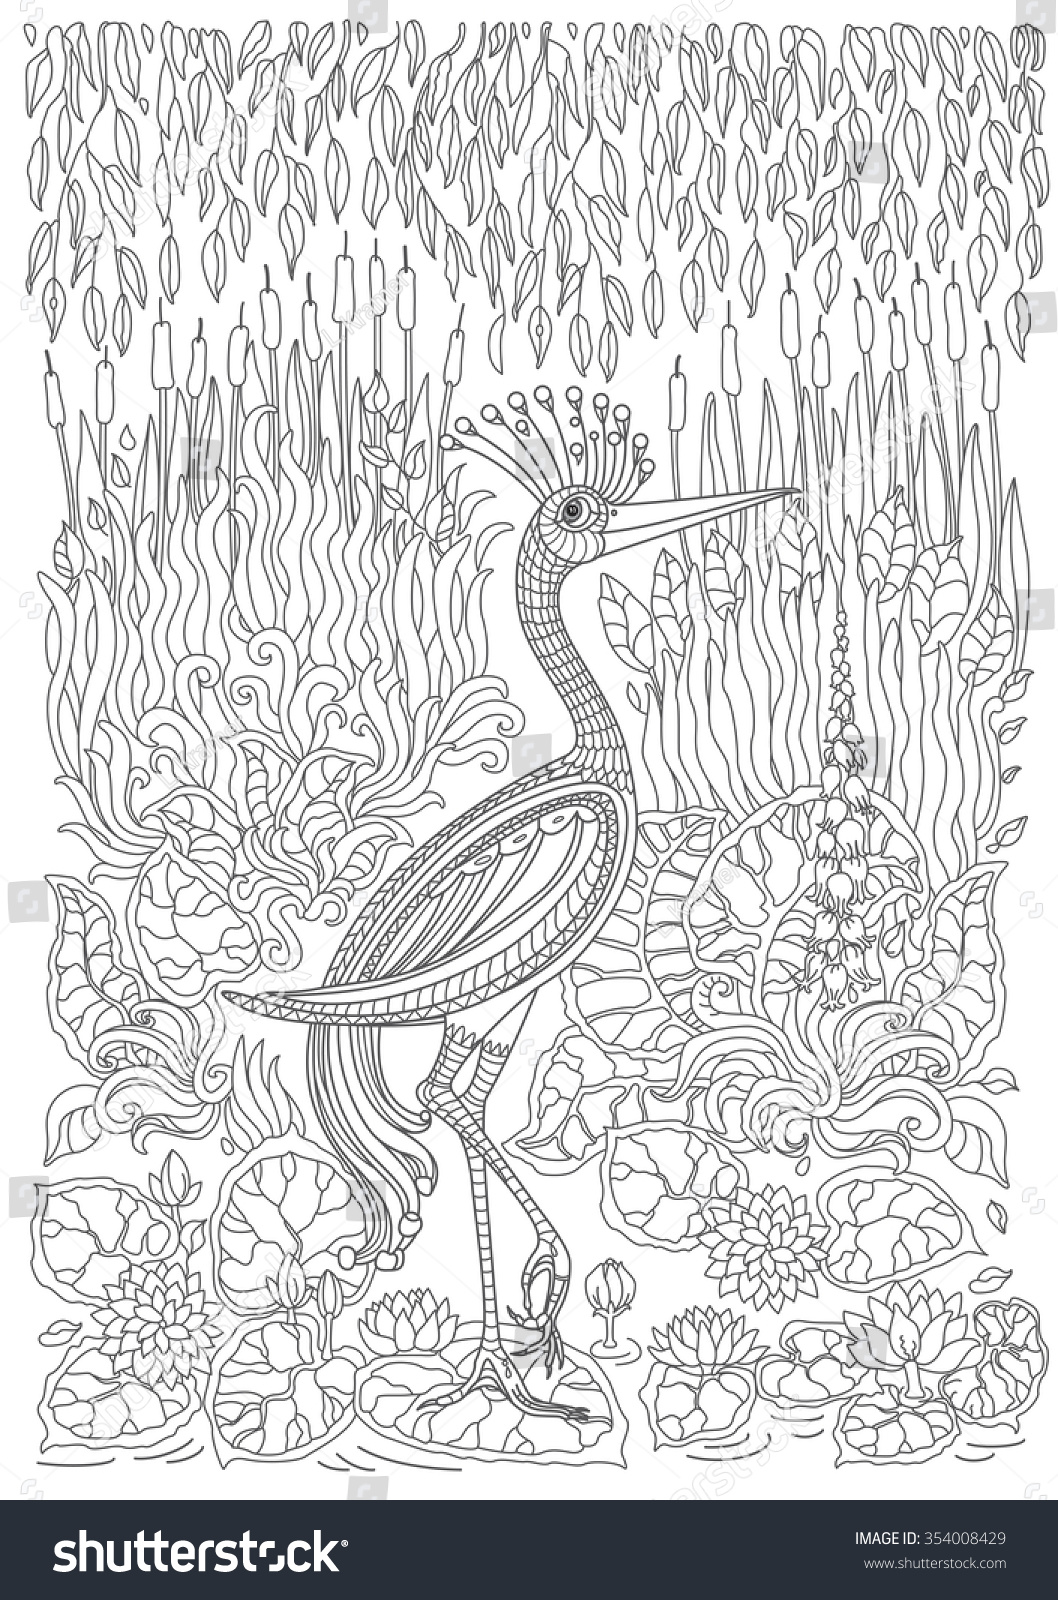 Image Vectorielle De Stock De Oiseau Exotique Fleurs